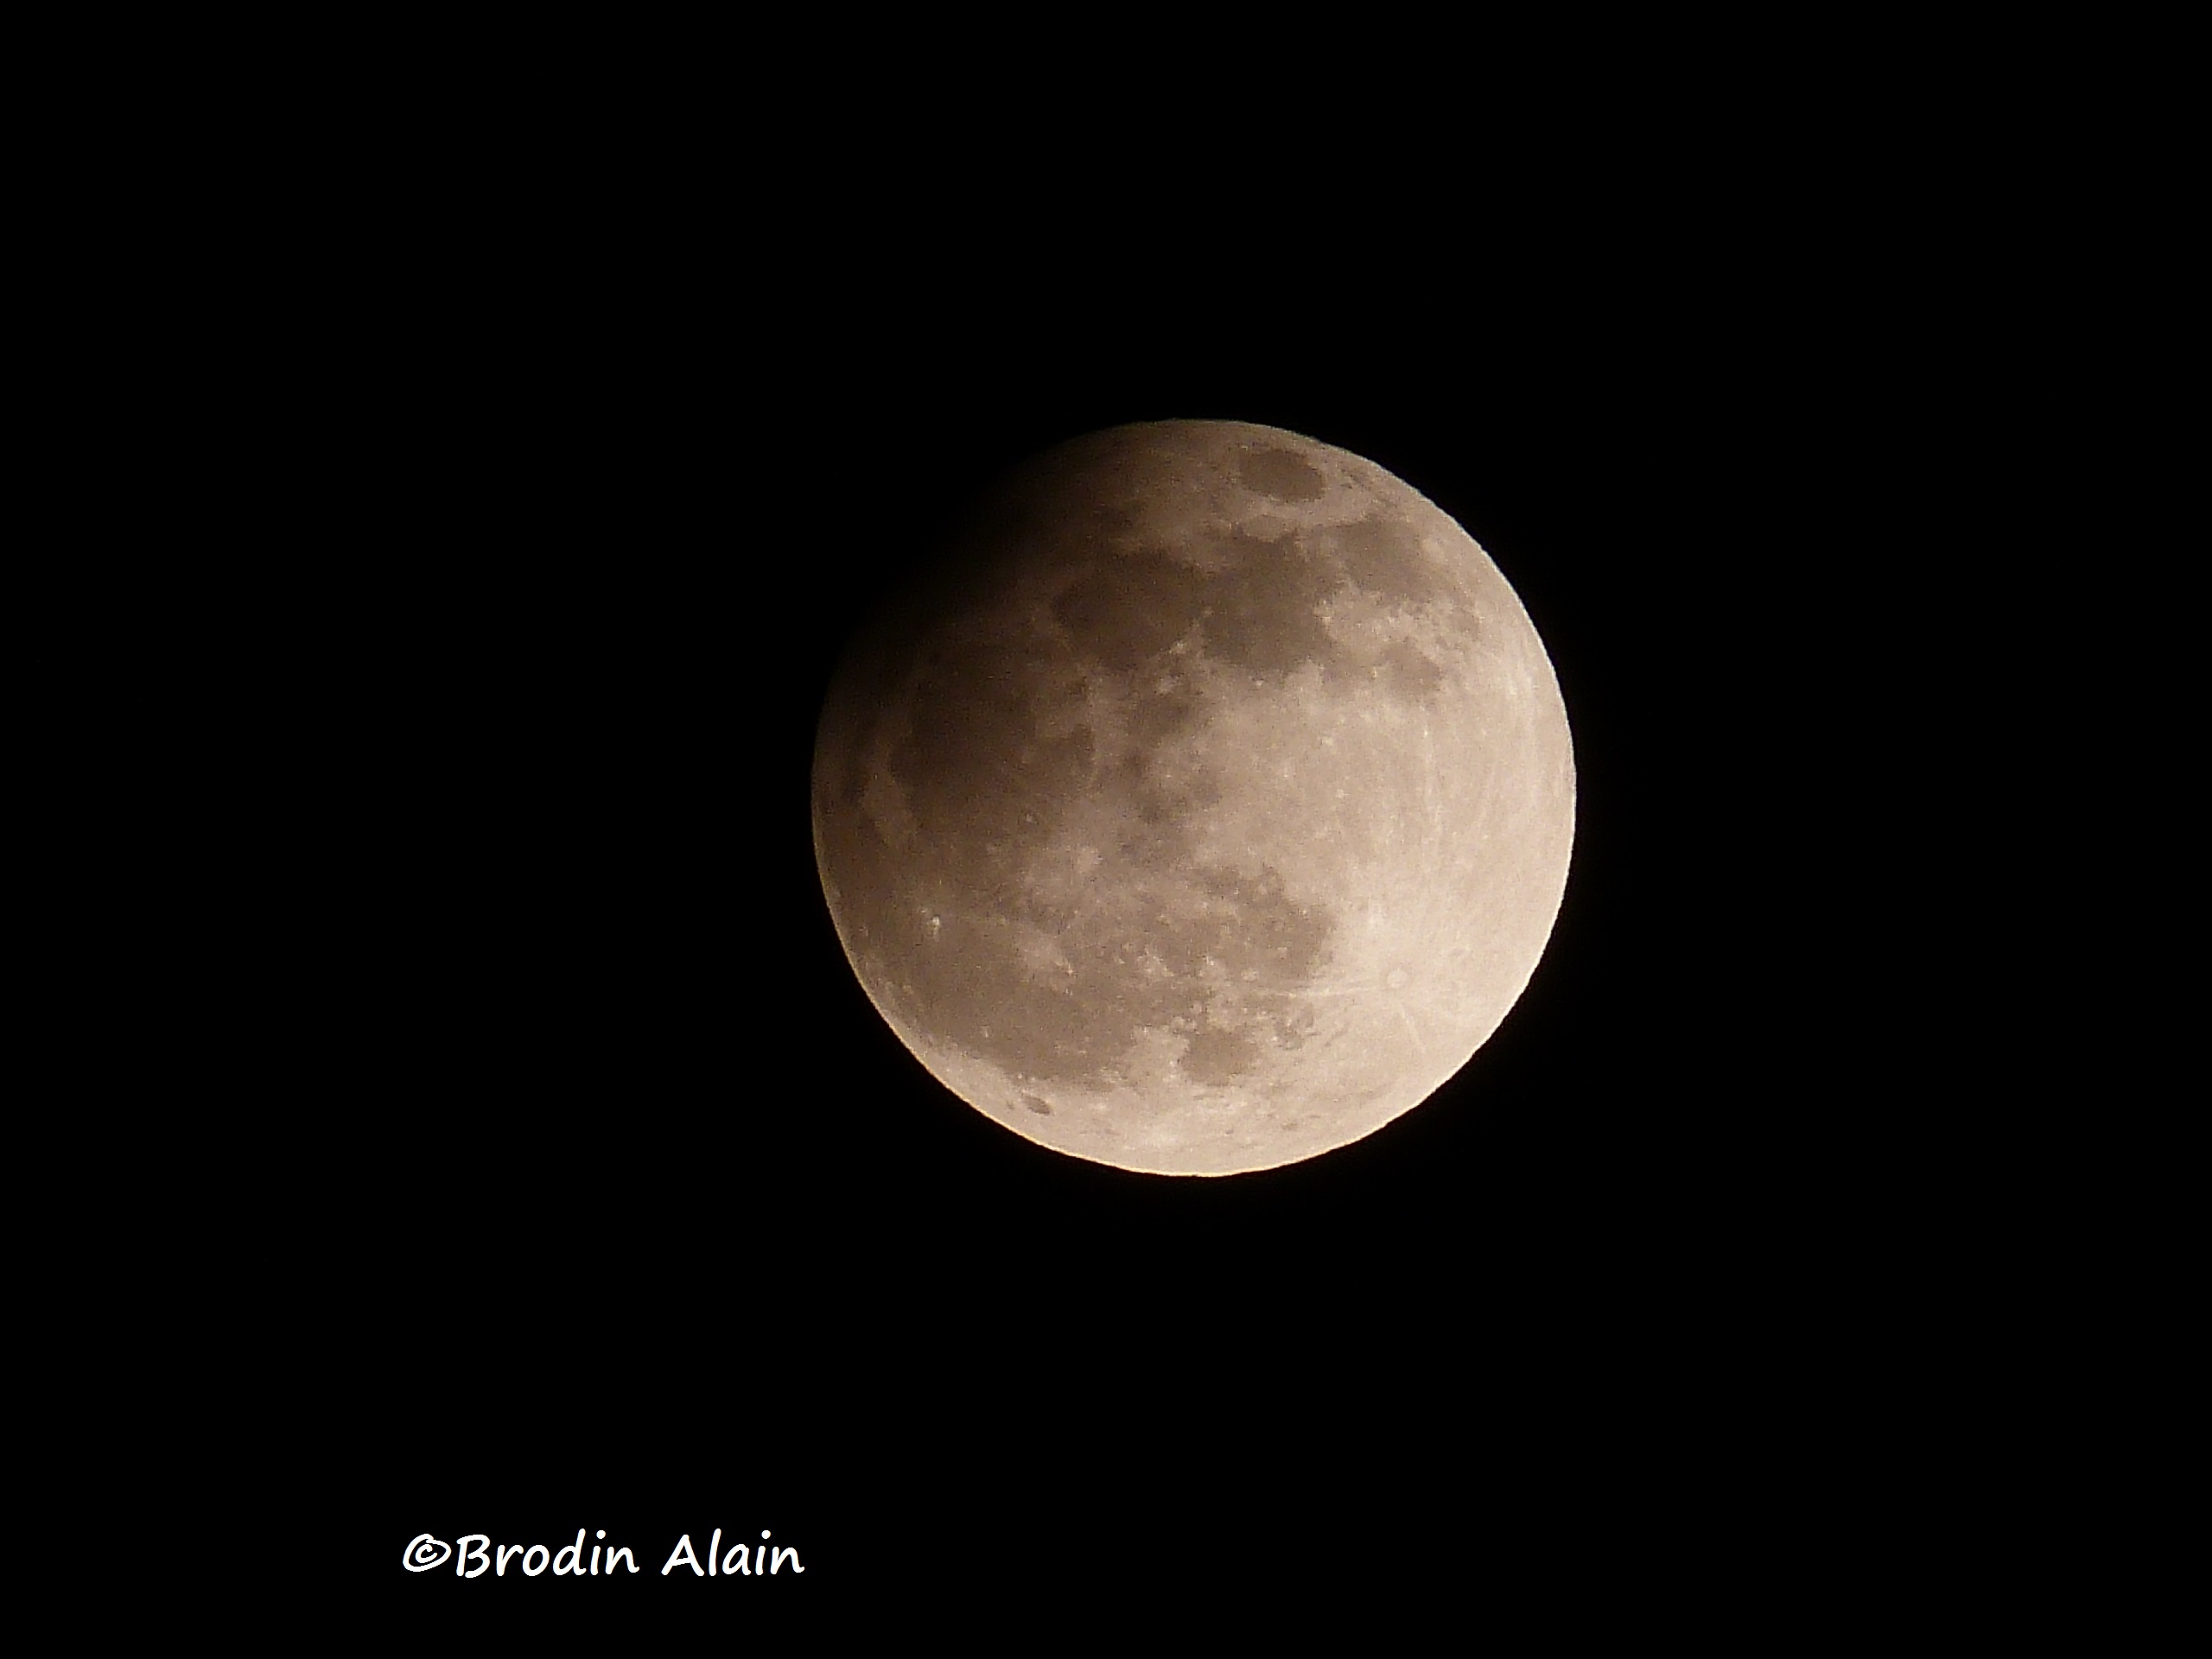 Eclipse Partielle de Lune du 25 04 2013
